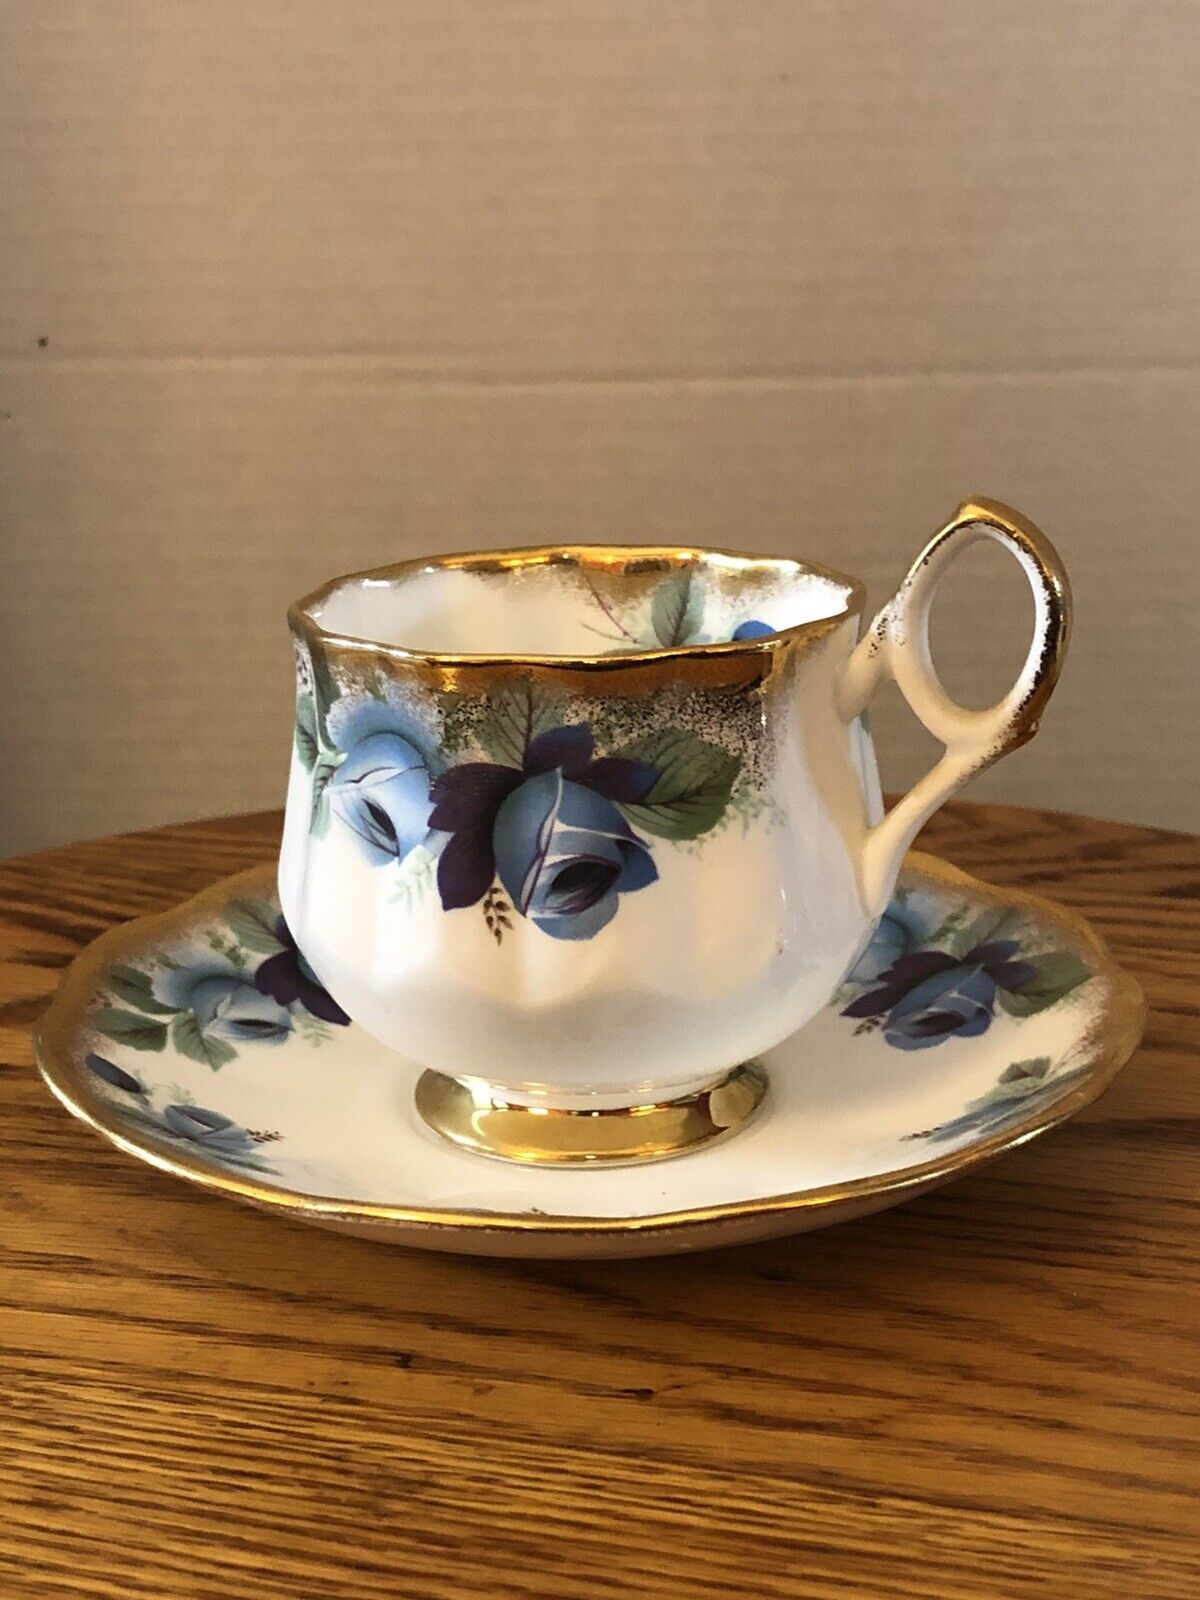 Vintage Taylor & Kent Teacup & Saucer. “Elizabethan” Pattern. England. Numbered.